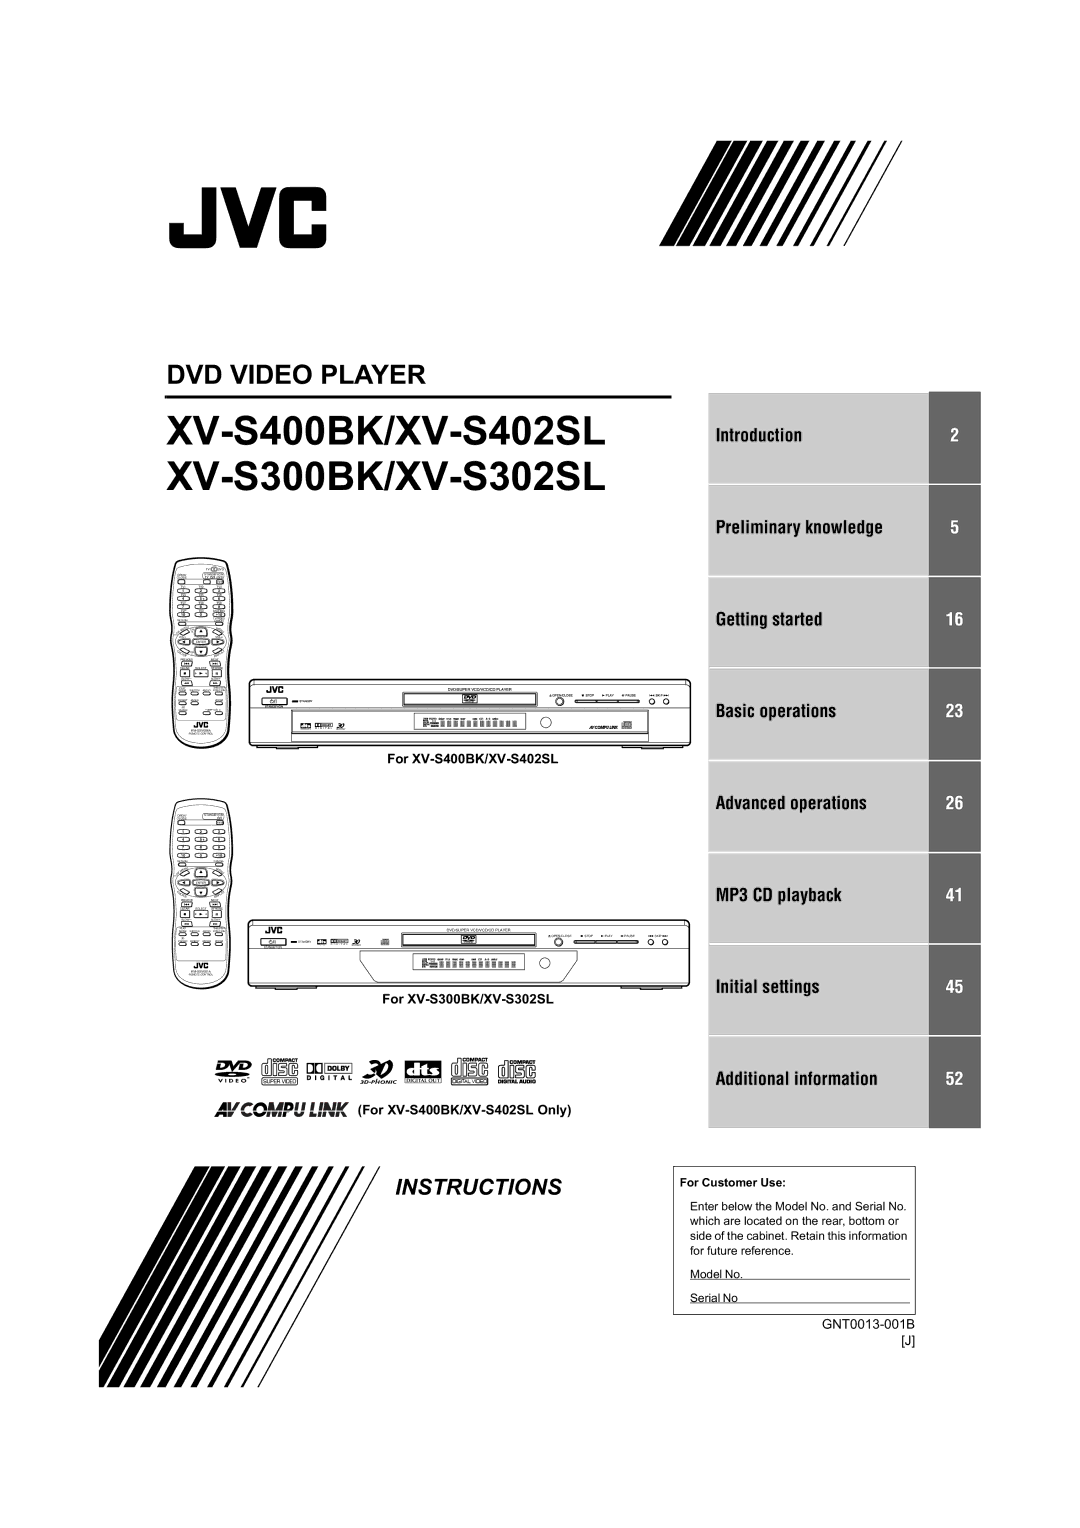 JVC XV-S400BK, XV-S402SL, XV-S300BK, XV-S302SL manual RU96%.966 RU96%.966/2QO 